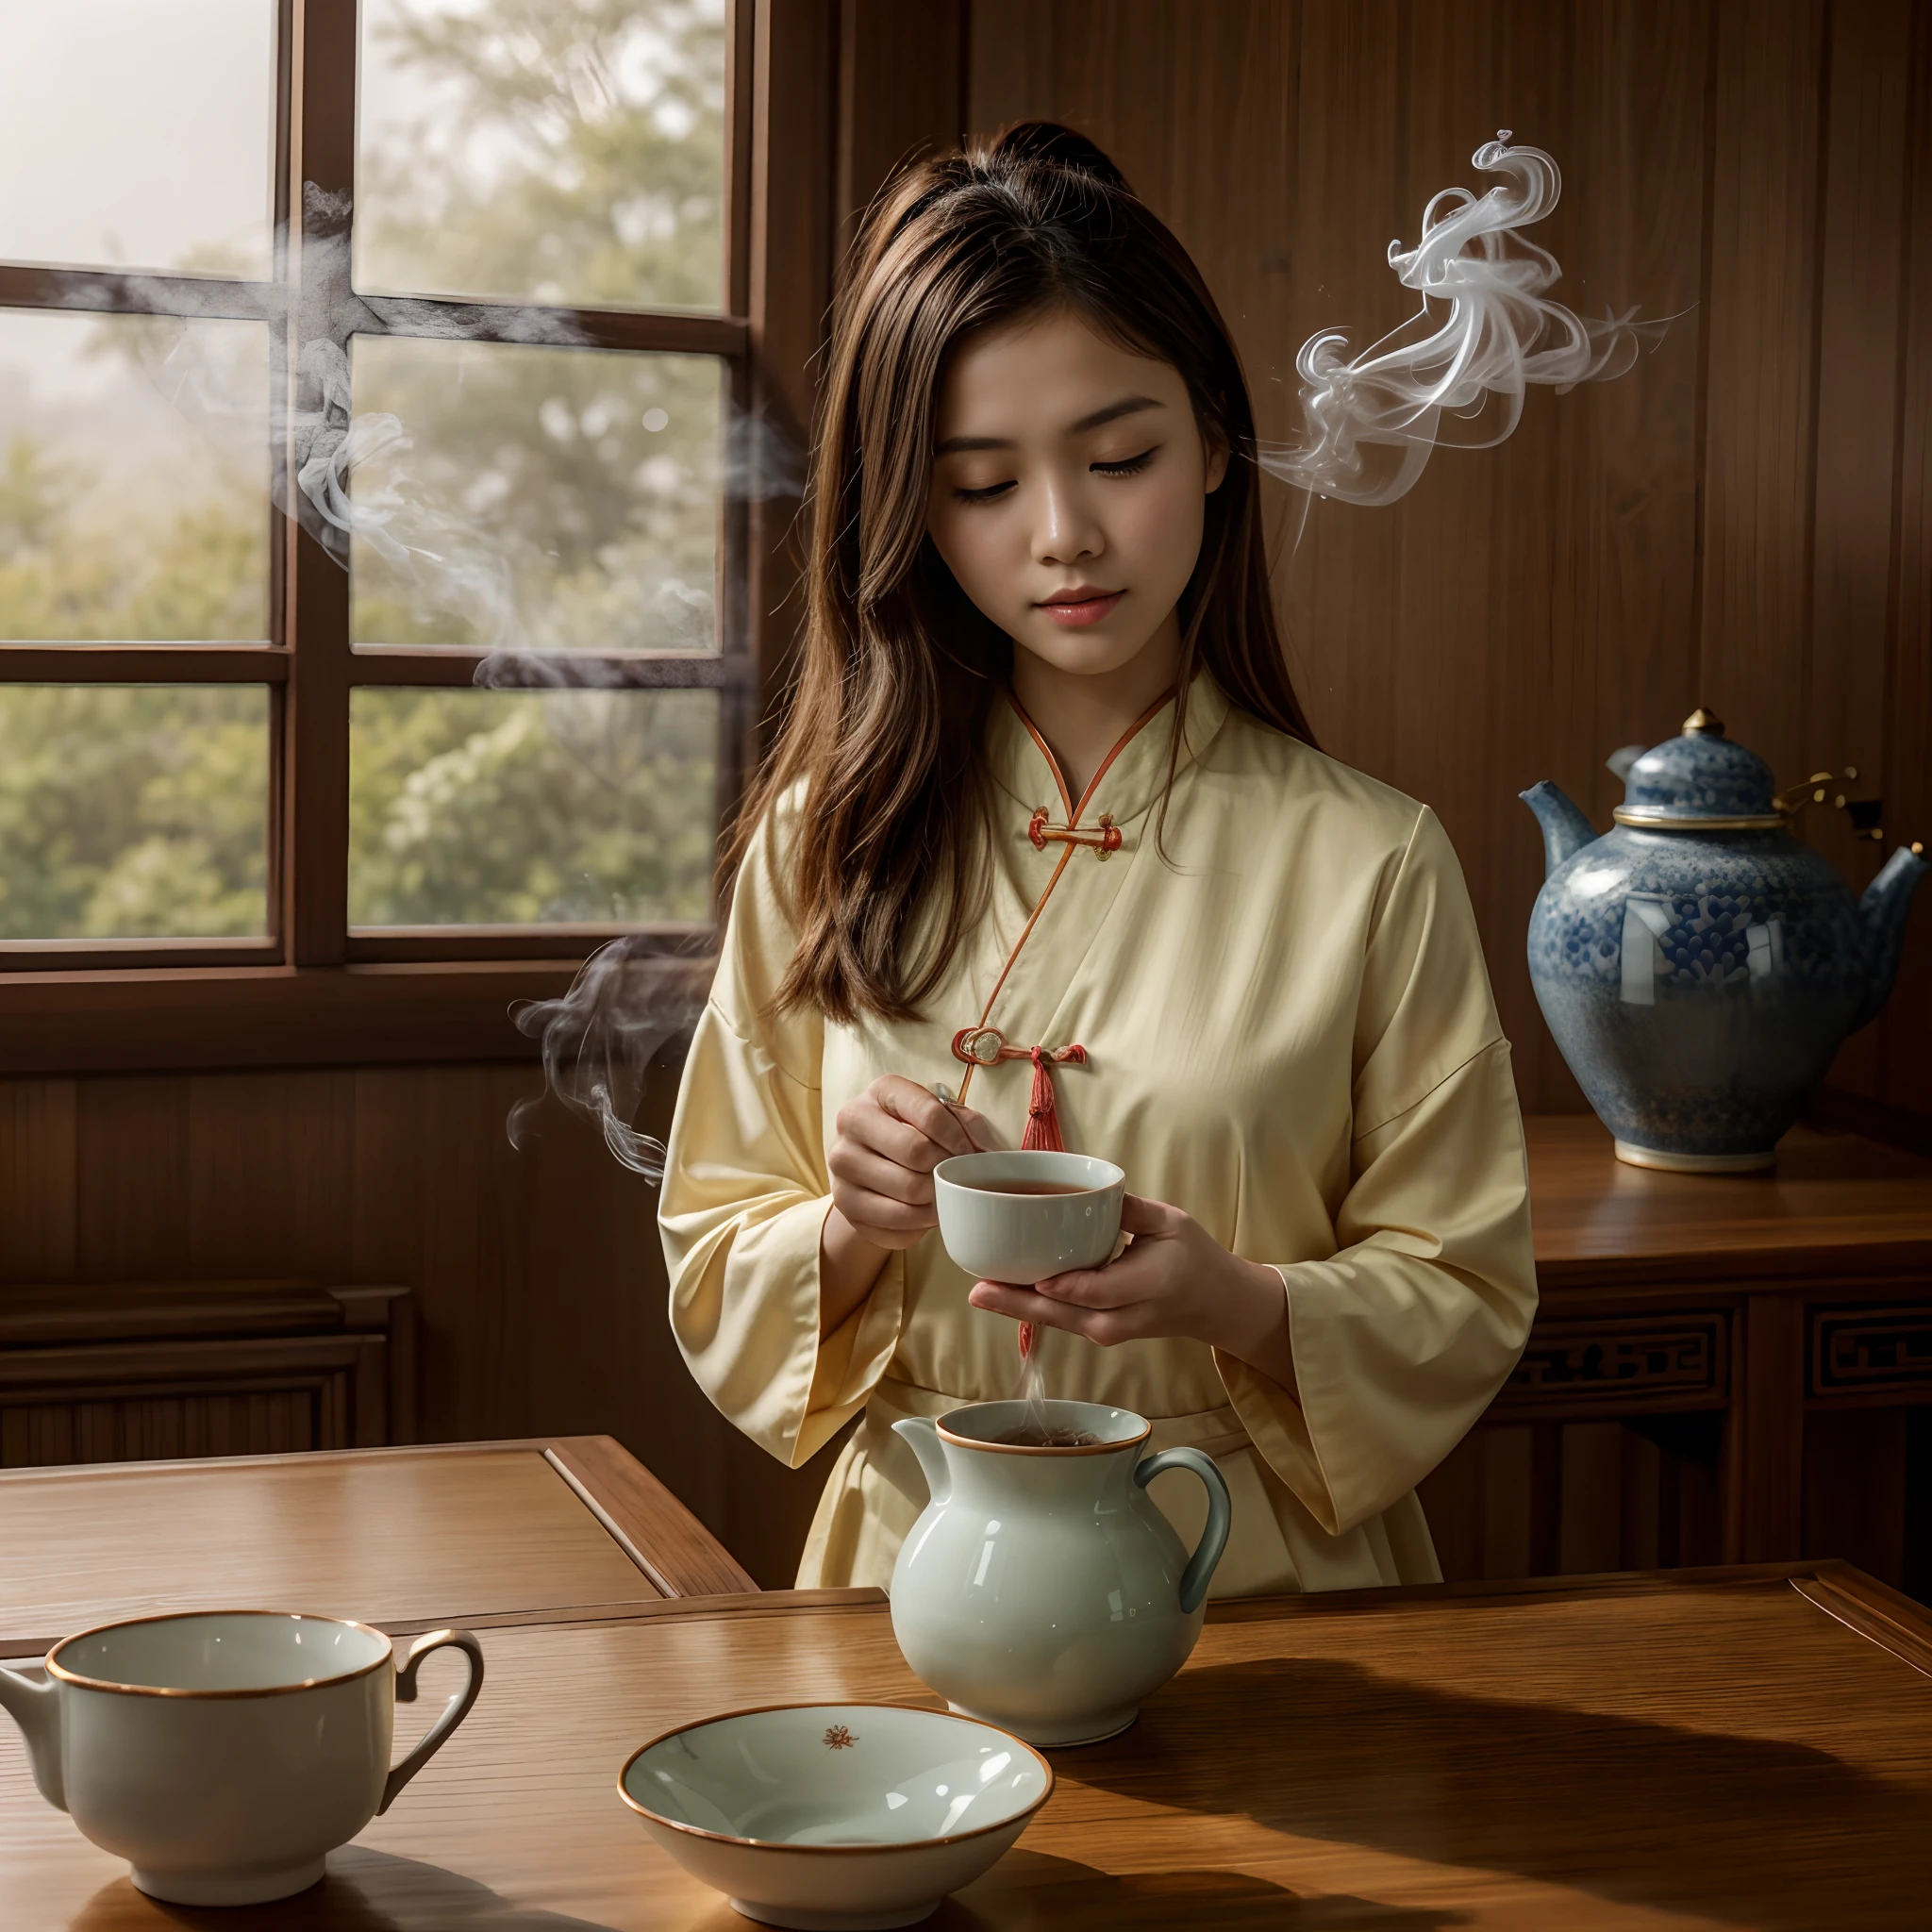 (傑作, 最高品質), 1人の女の子, 全身, 顔, 足, 中国の女の子のドキュメンタリー写真は、お茶の儀式に熱心である典型的な伝統的な中国のドレスを着ています. 急須から湯気の立つお茶をカップに注ぐ. 典型的な古い中国の部屋, 空気中の煙, 非常に拡散した光, 官能的な動き, 緑_目, 赤い唇, 口を少し開ける, closed 目, やわらかい光, 高解像度の写真, 詳細な, (非常に詳細な肌:1.2), 16k, 細部までこだわった. 超高解像度.写実的な:1.4, 超高解像度, デジタル一眼レフ, やわらかい光ing, 高品質, グレインカラーフィルム, 富士フイルムXT3, ローアングルの視点